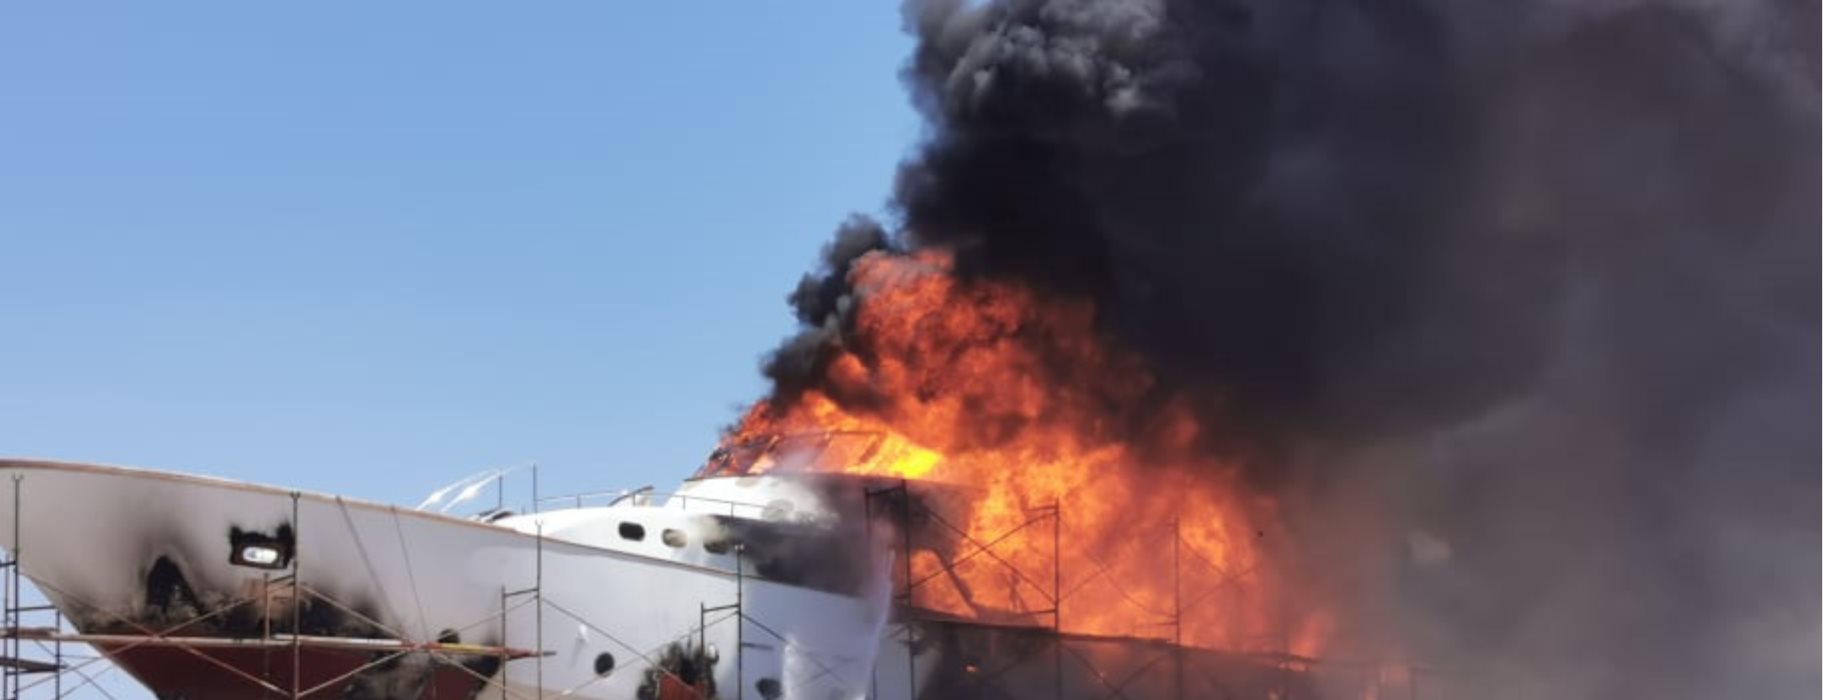 Σύρος: Φωτιά και έκρηξη στο ναυπηγείο του Ταρσανά (βίντεο)